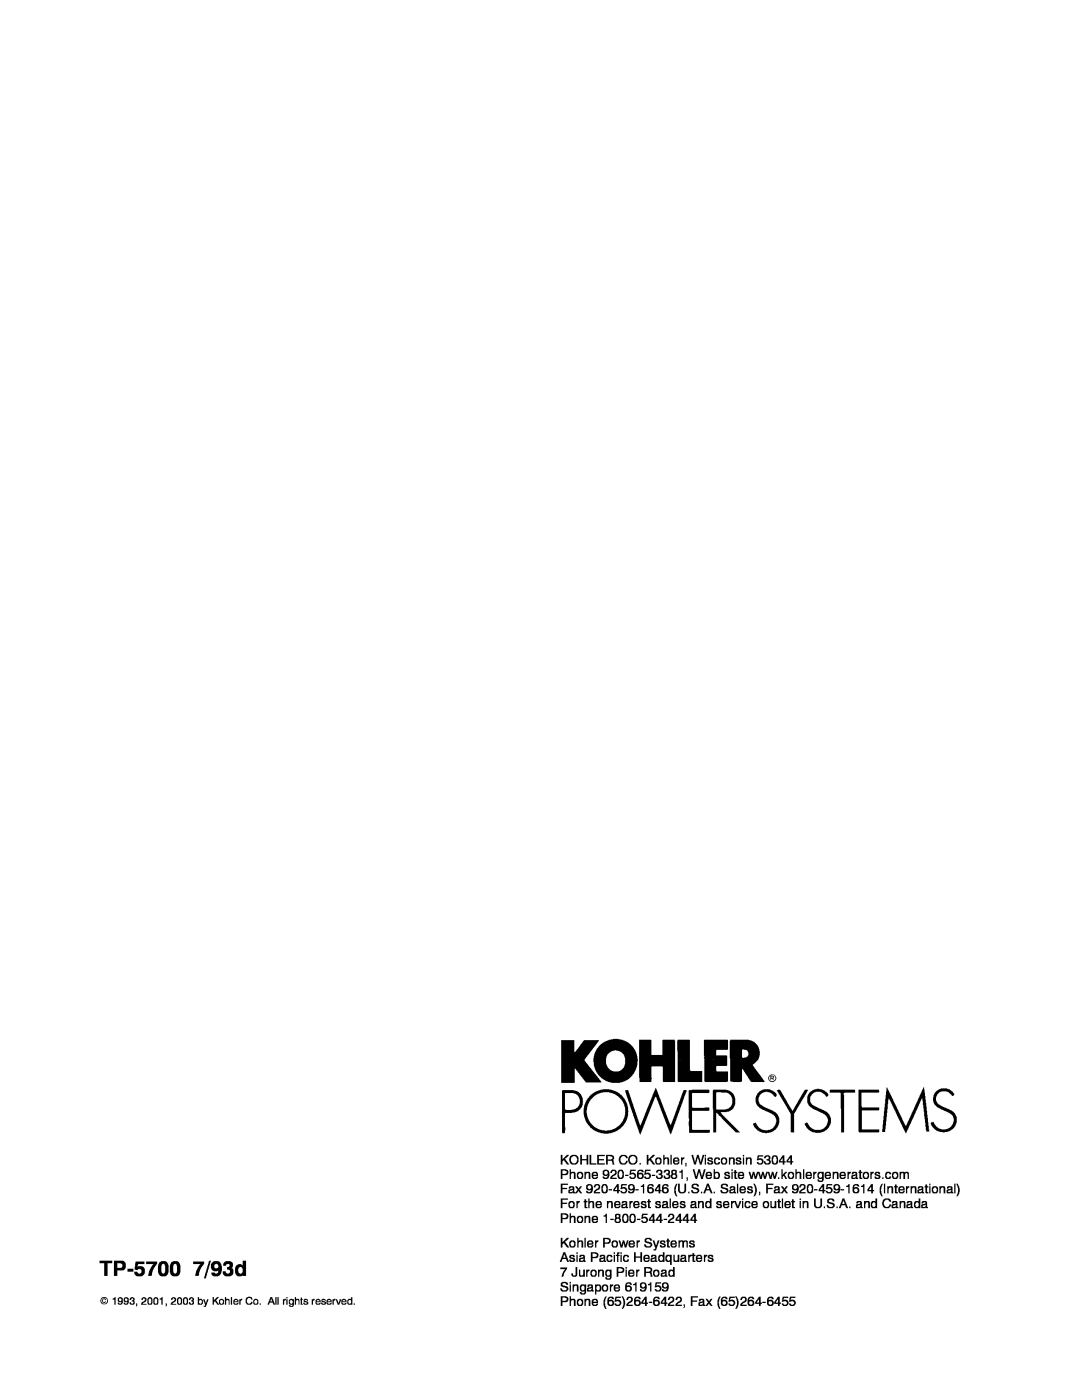 Kohler 20--2800 kW manual TP-5700 7/93d, KOHLER CO. Kohler, Wisconsin, Singapore Phone 65264-6422, Fax 